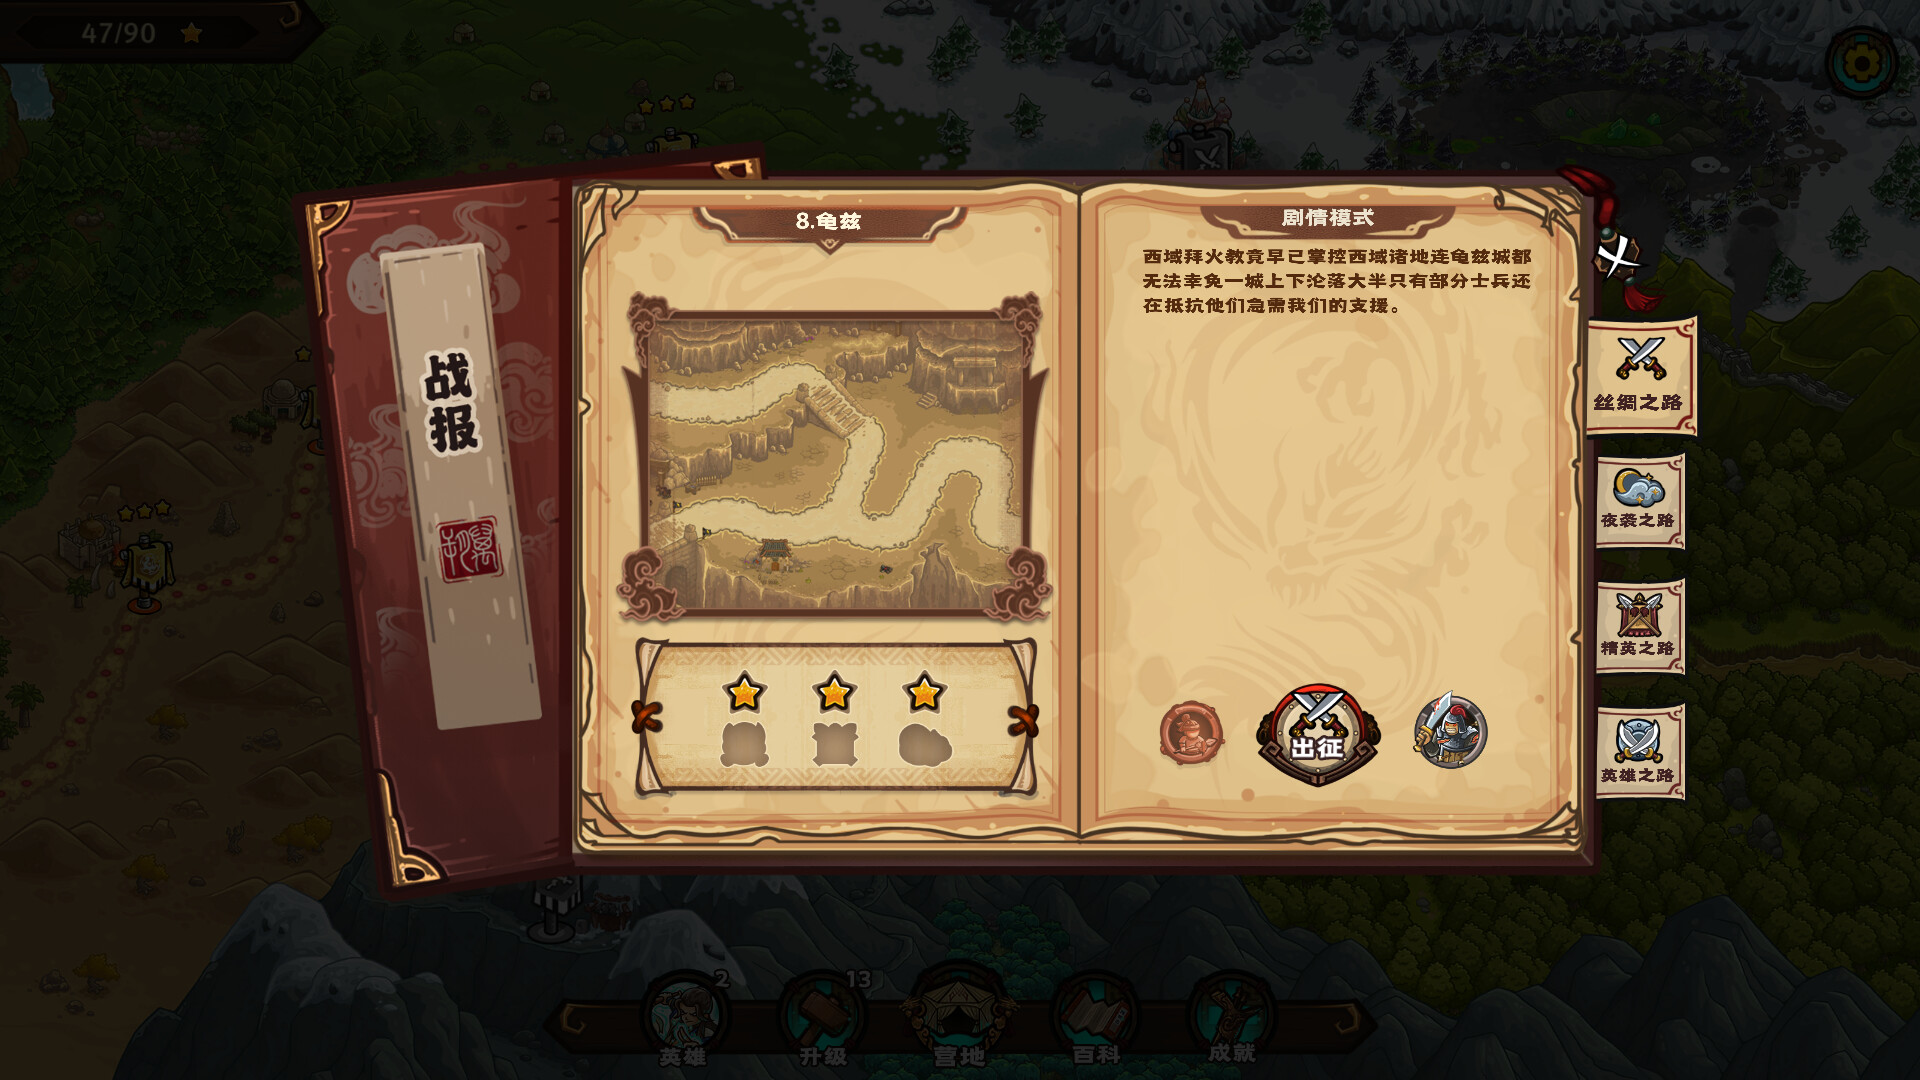 Oriental Dynasty - Silk Road defense war Steam CD Key 2.8 USD